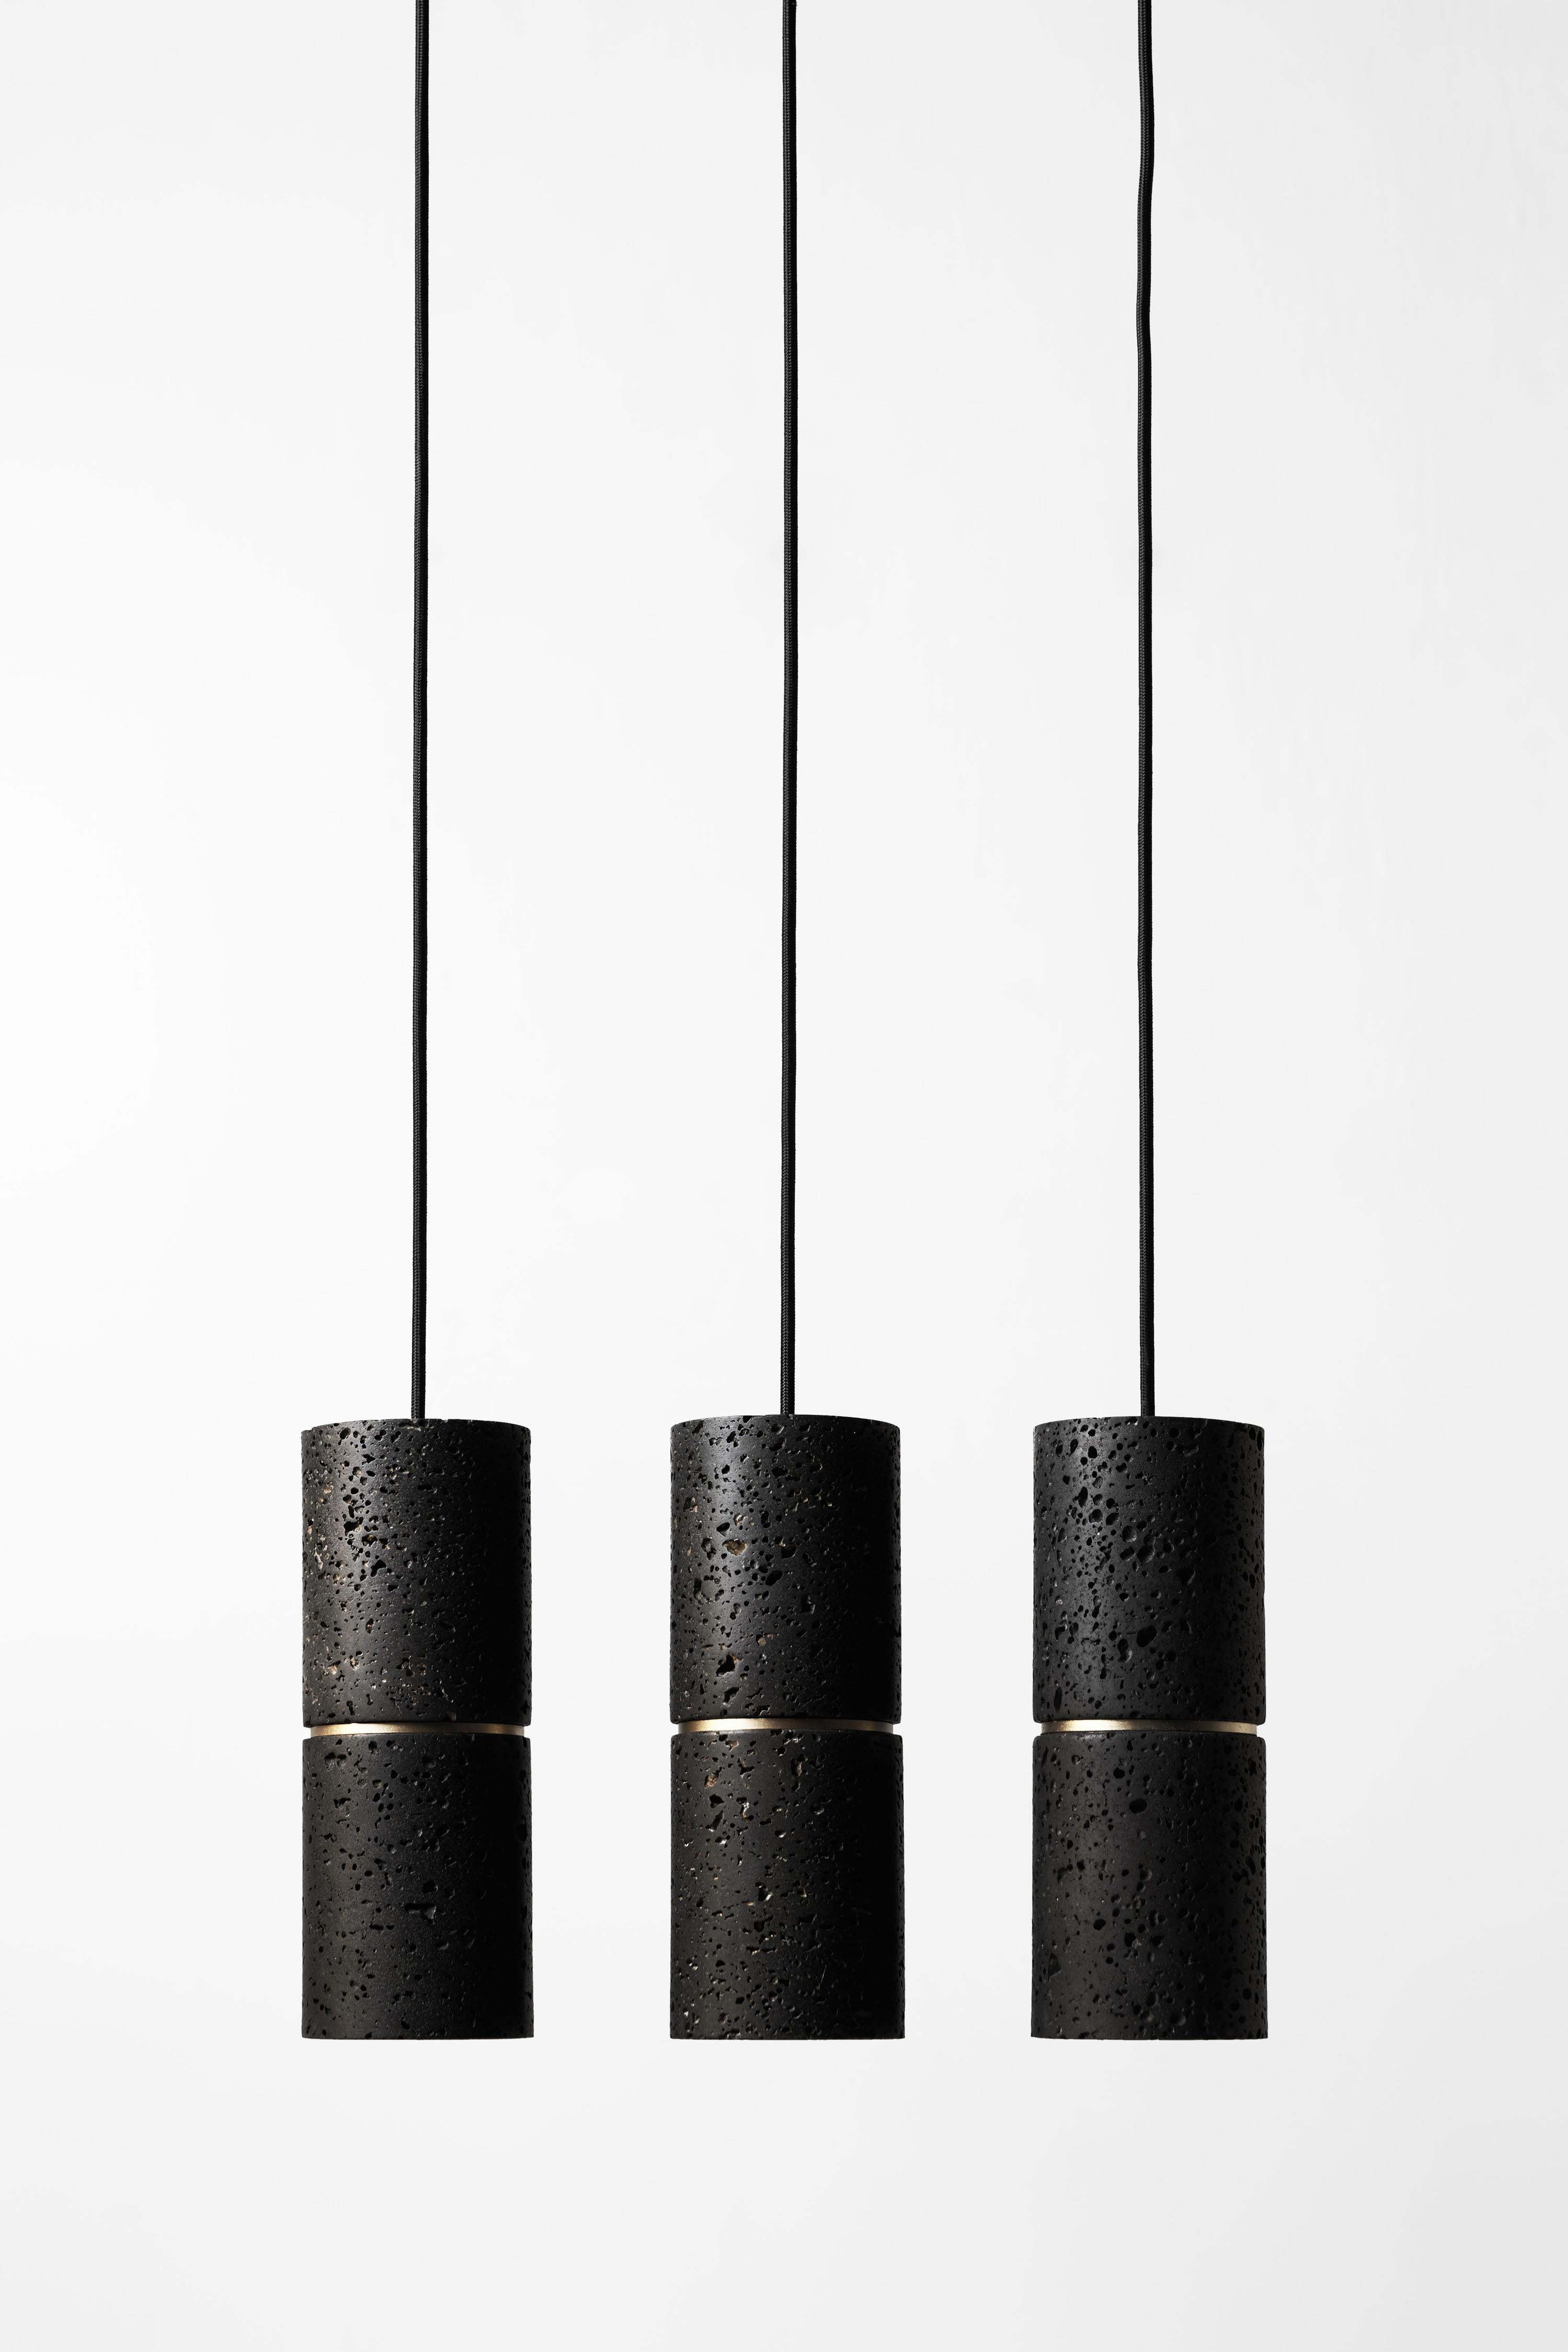 Lampe suspendue 'RI' par Buzao x Bentu Design. 
Versions en pierre de lave noire et en marbre blanc disponibles.

(vendu individuellement)

Mesures : 26,5 cm de haut ; 10 cm de diamètre
Fil : 2 mètres noir (réglable)

Finition en laiton (or) ou en